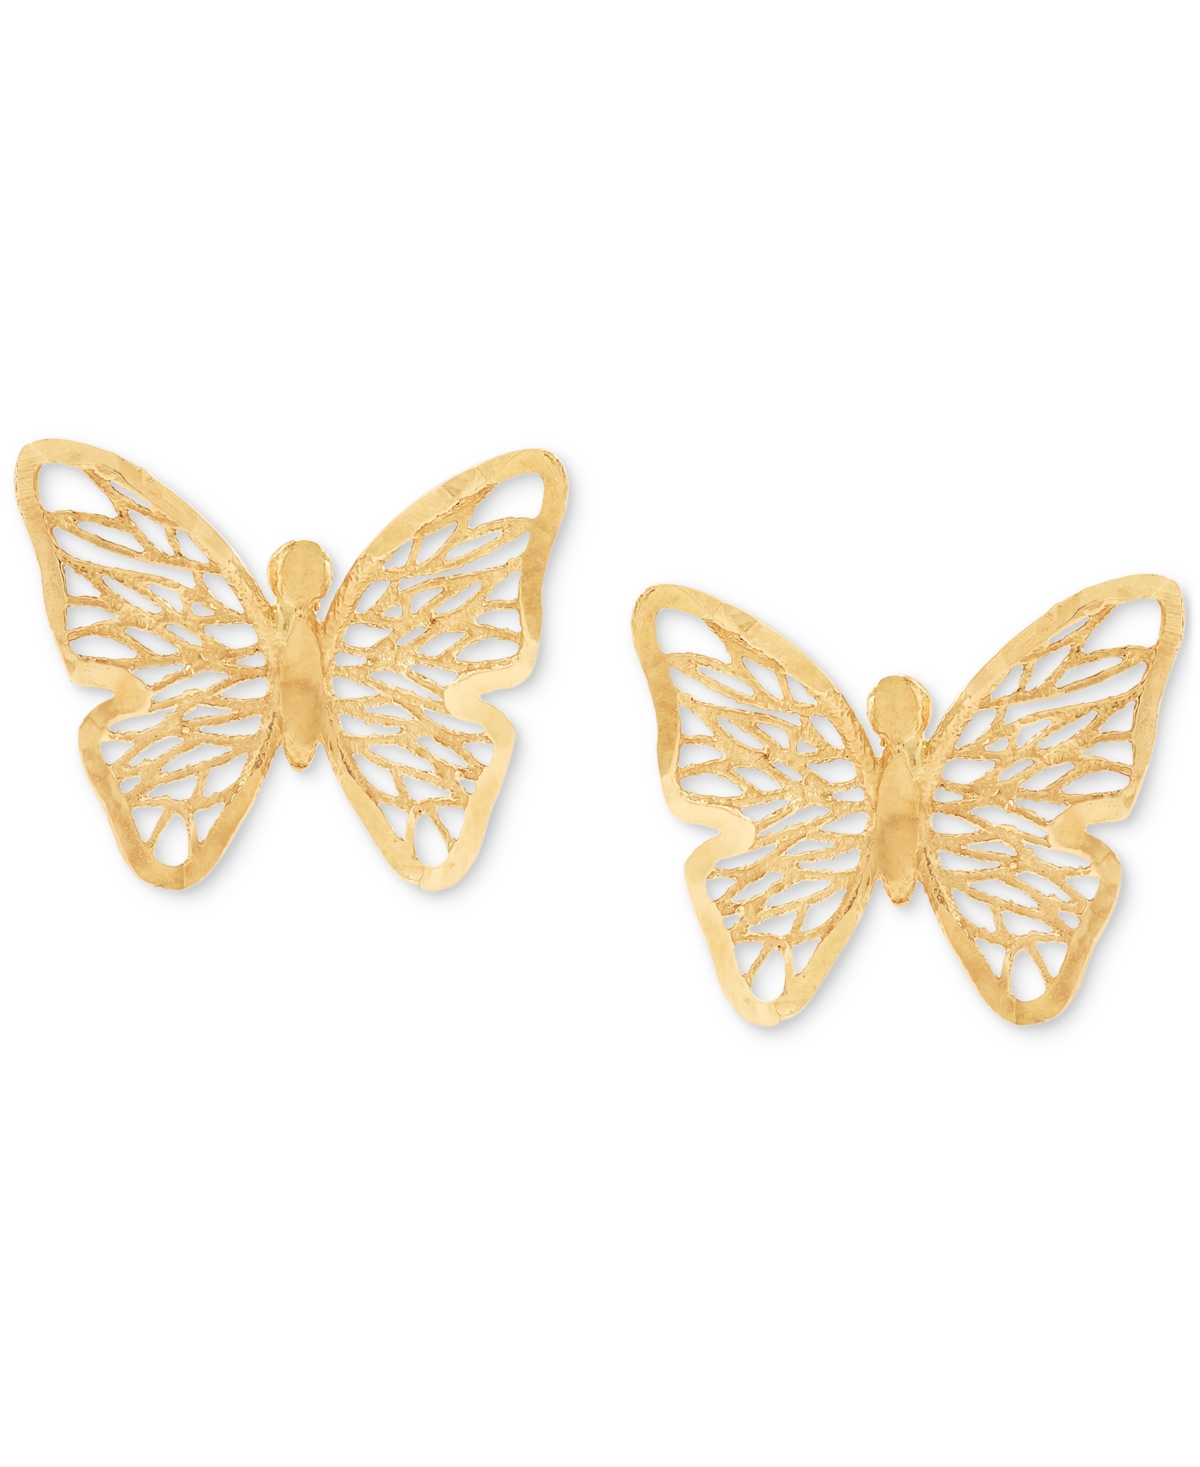 Filigree Openwork Butterfly Stud Earrings in 10k Gold - Gold